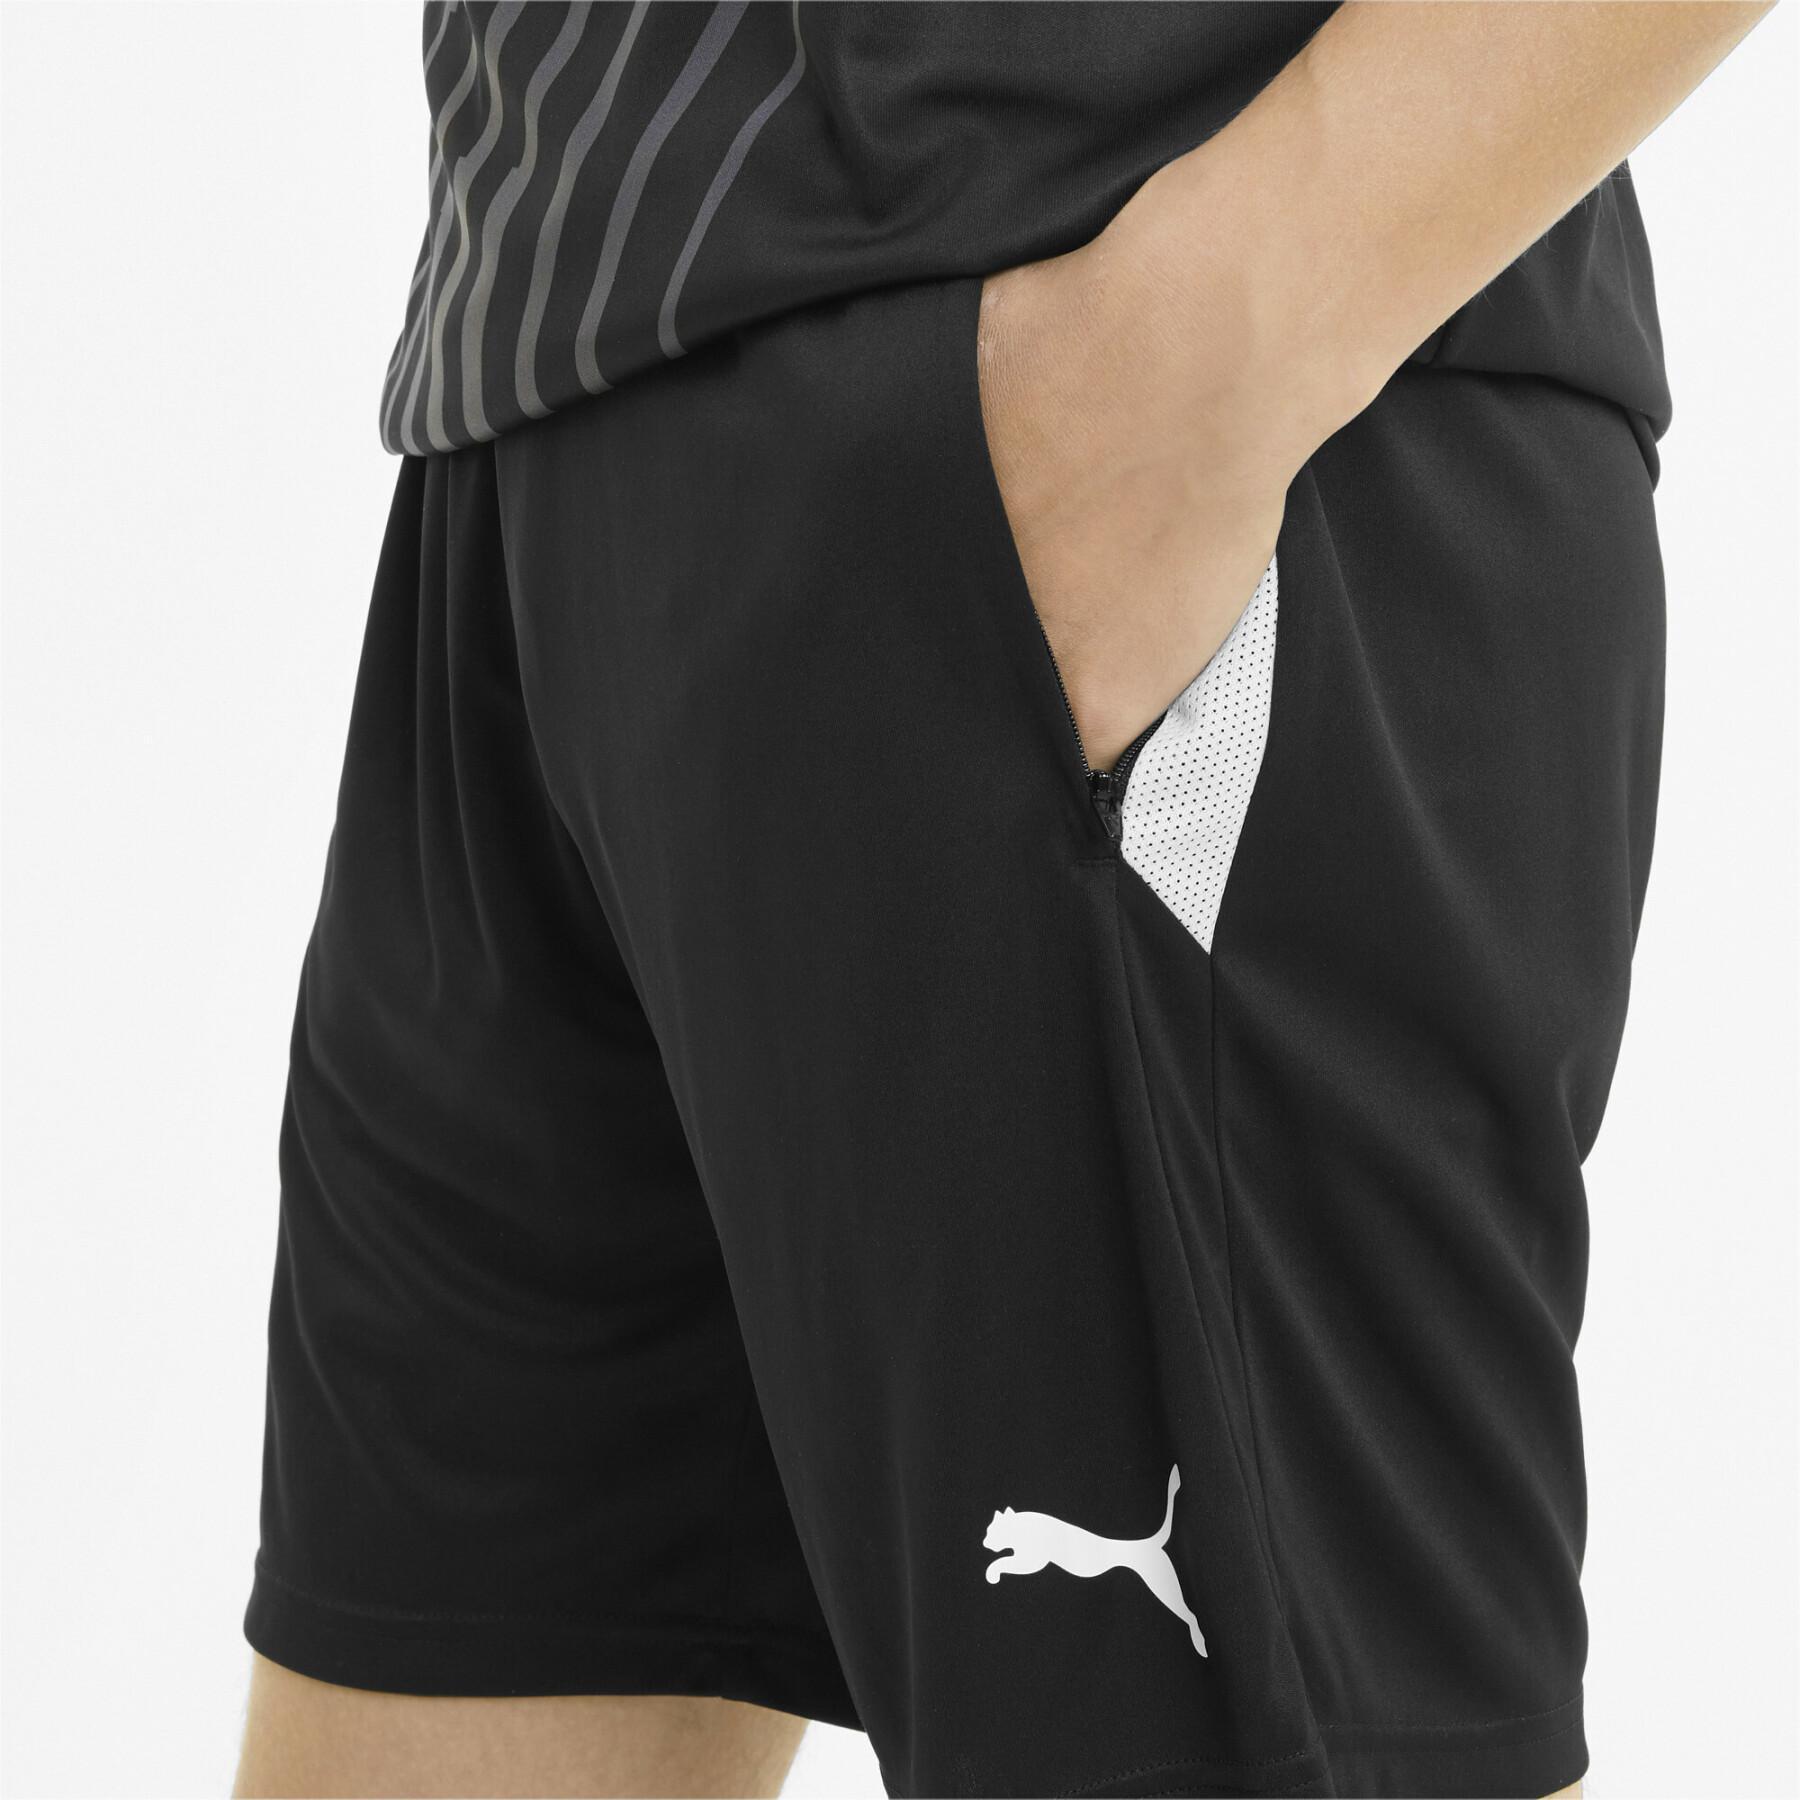 Puma Team Liga Training - Shorts - Men's wear - Handball wear